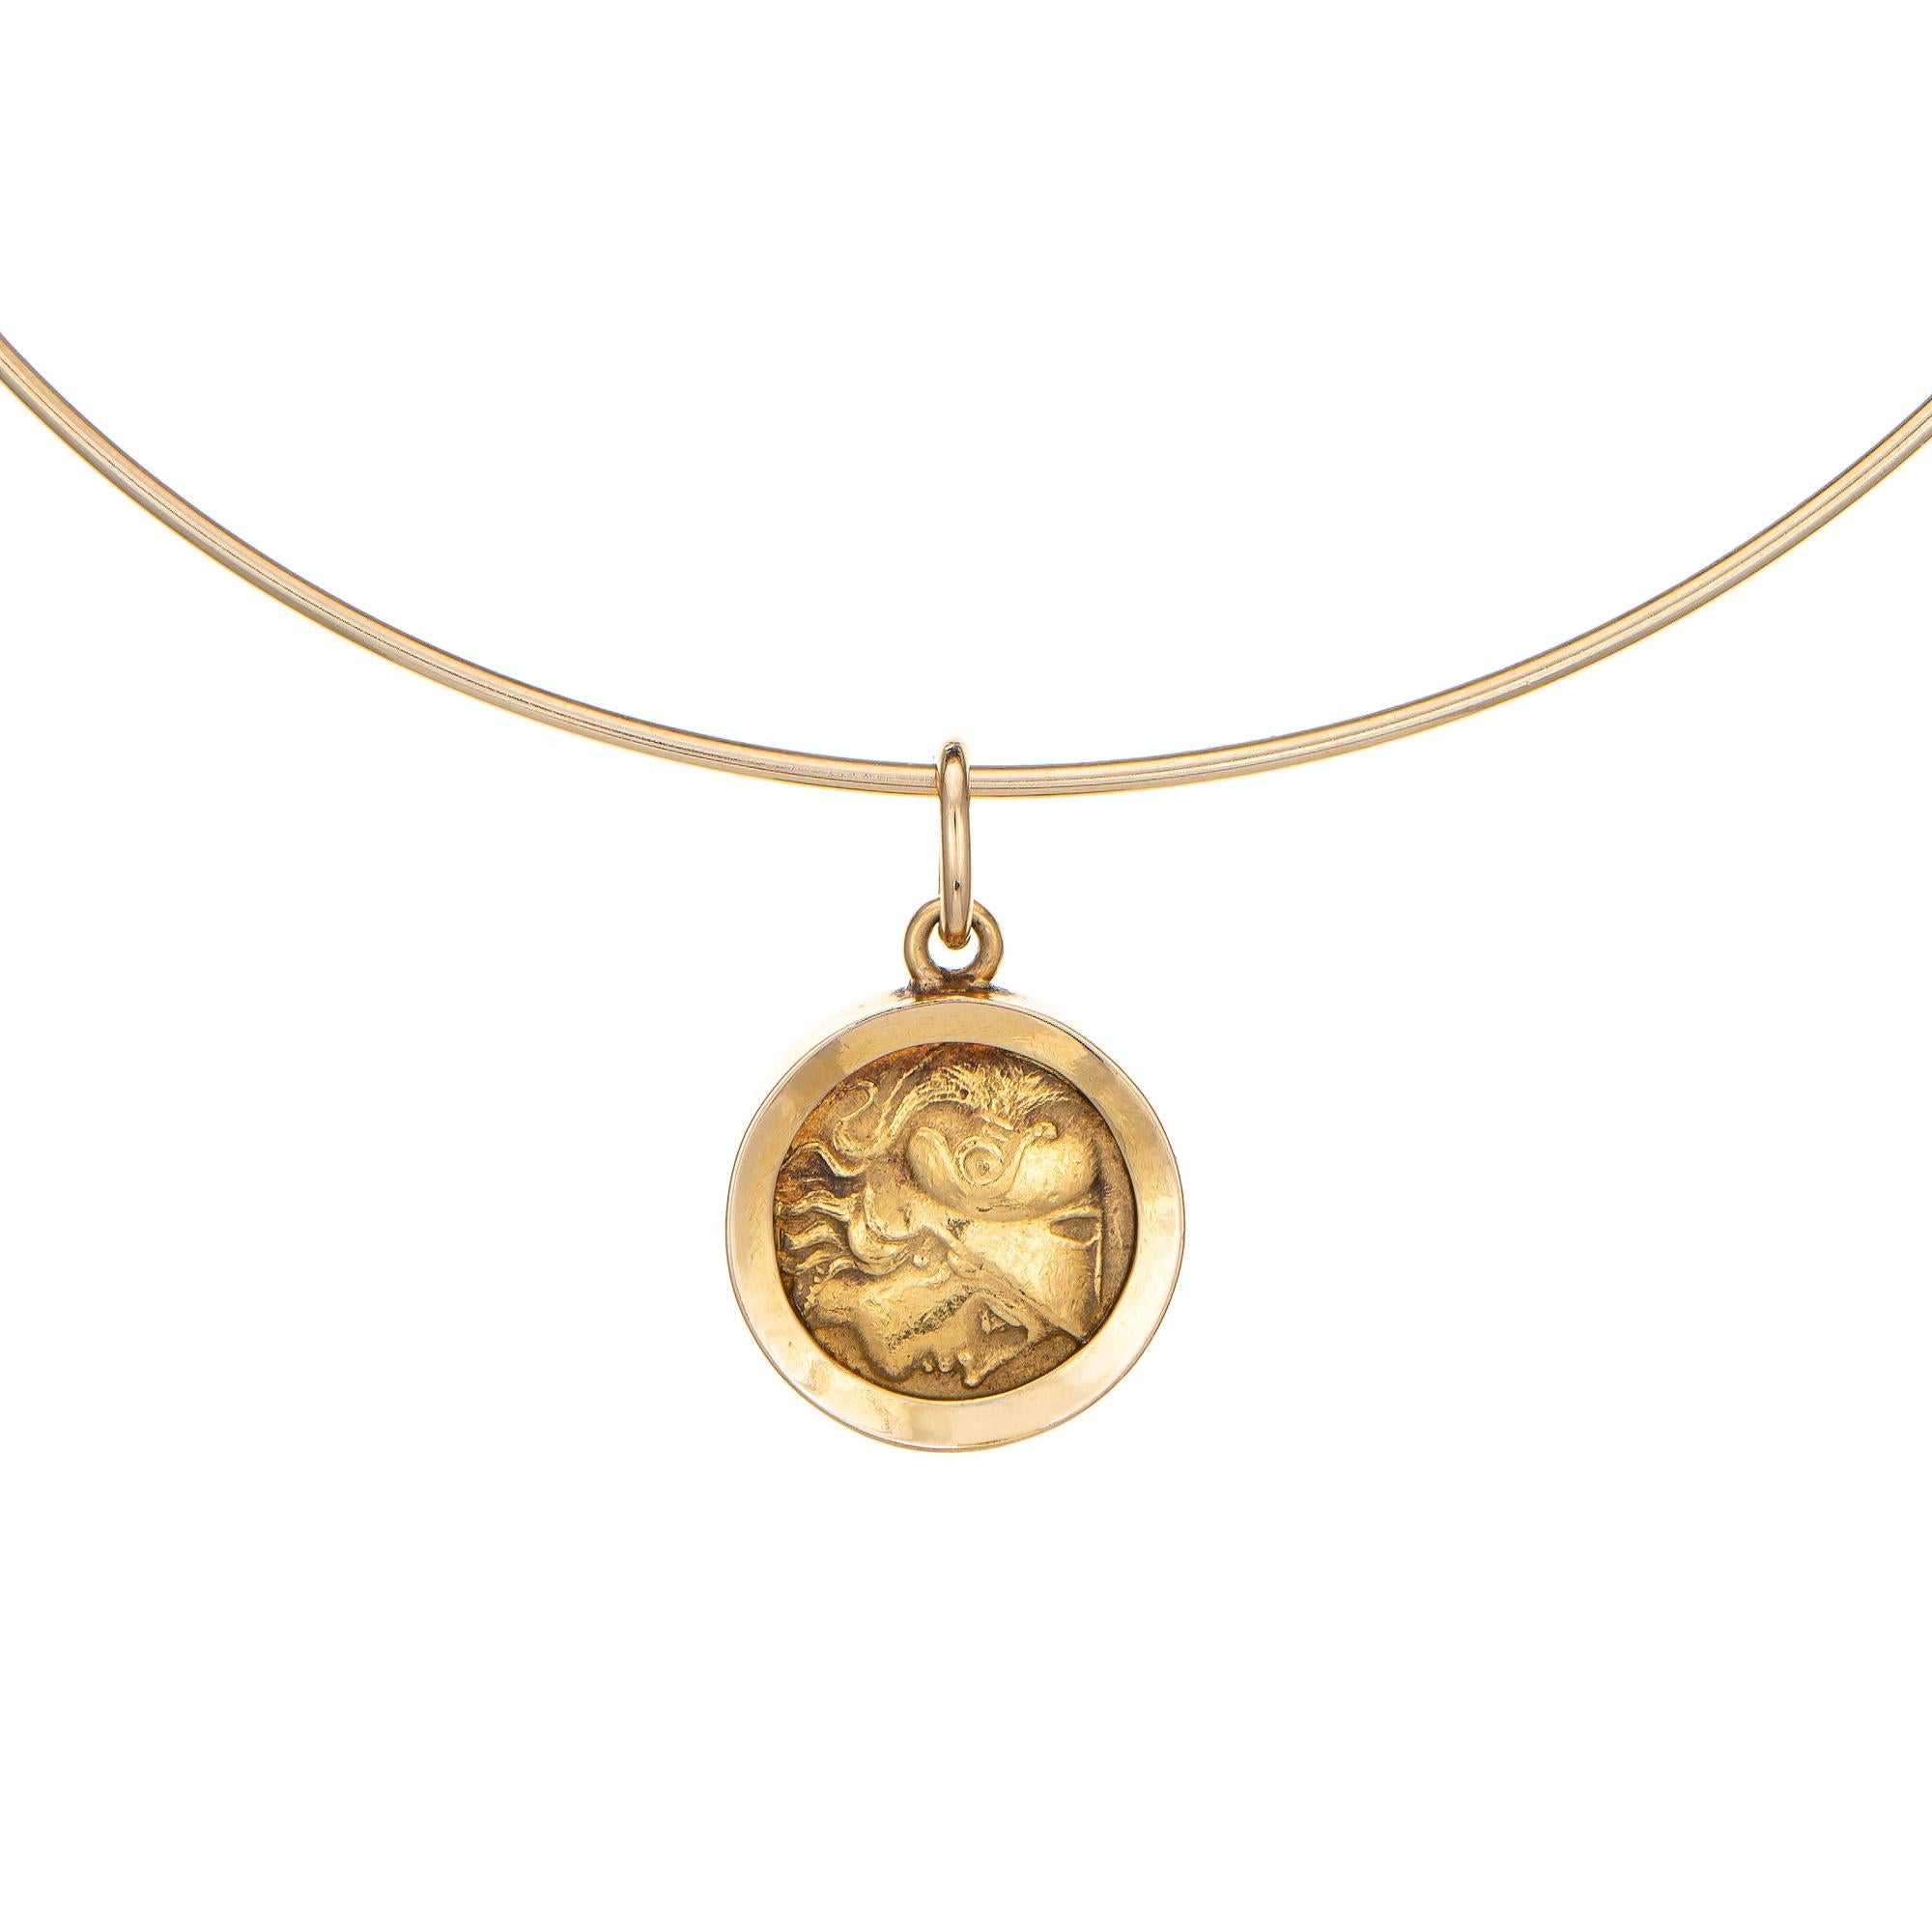 Stilvolle Halskette aus 14-karätigem Gelbgold mit einem Medaillon aus 24-karätigem Gold (ca. 1980er Jahre).

Die stilvolle Halskette ist 14 Zoll kurz und wir empfehlen Ihnen, Ihren Hals vor dem Kauf zu messen. Die Halskette wird mit einem Medaillon